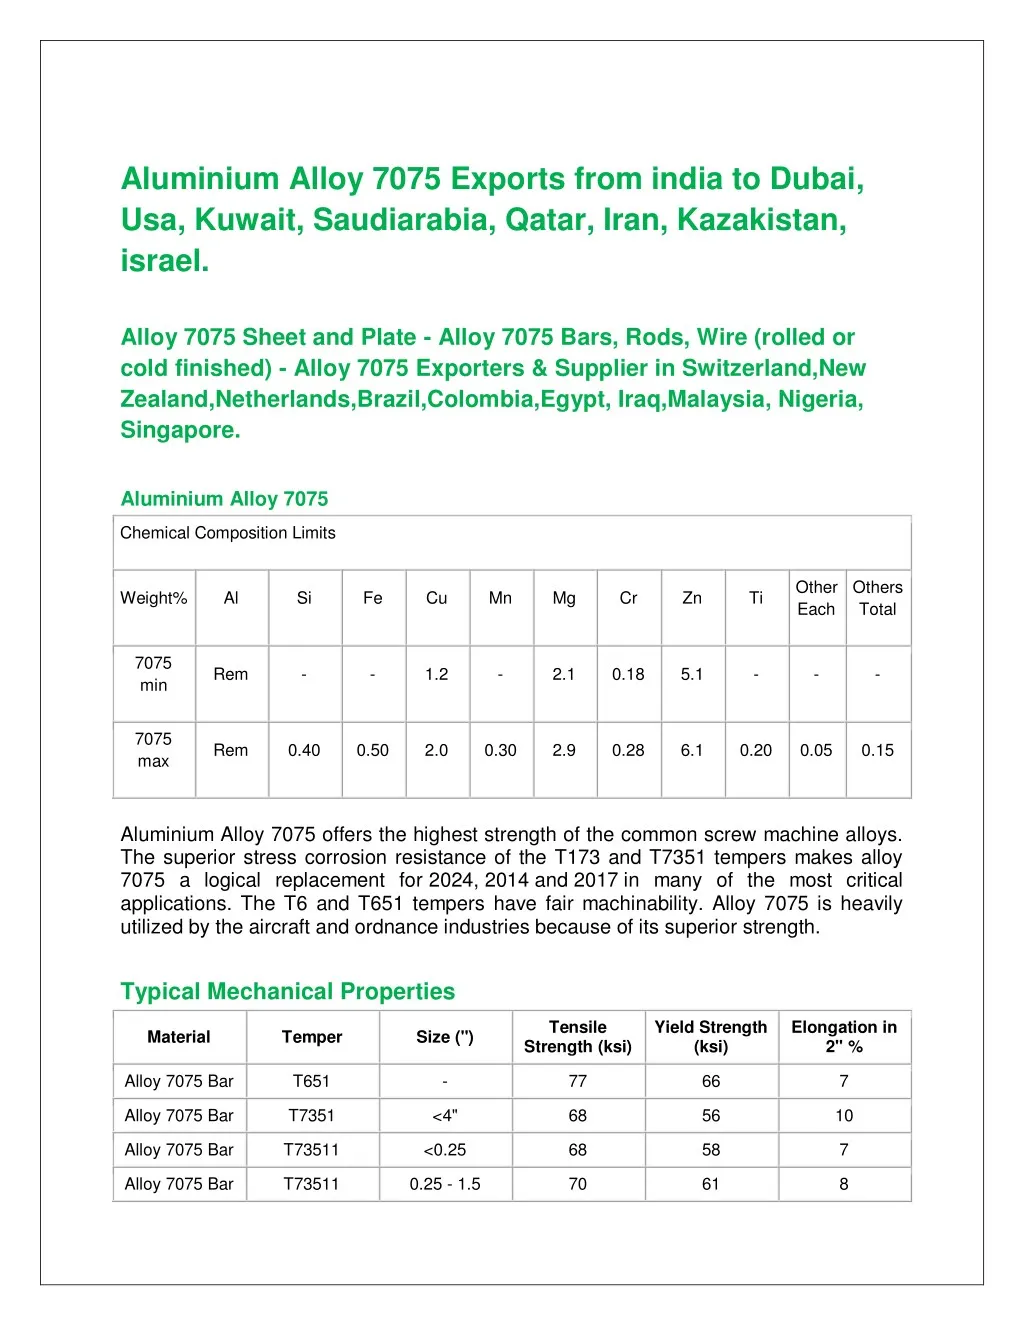 aluminium alloy 7075 exports from india to dubai